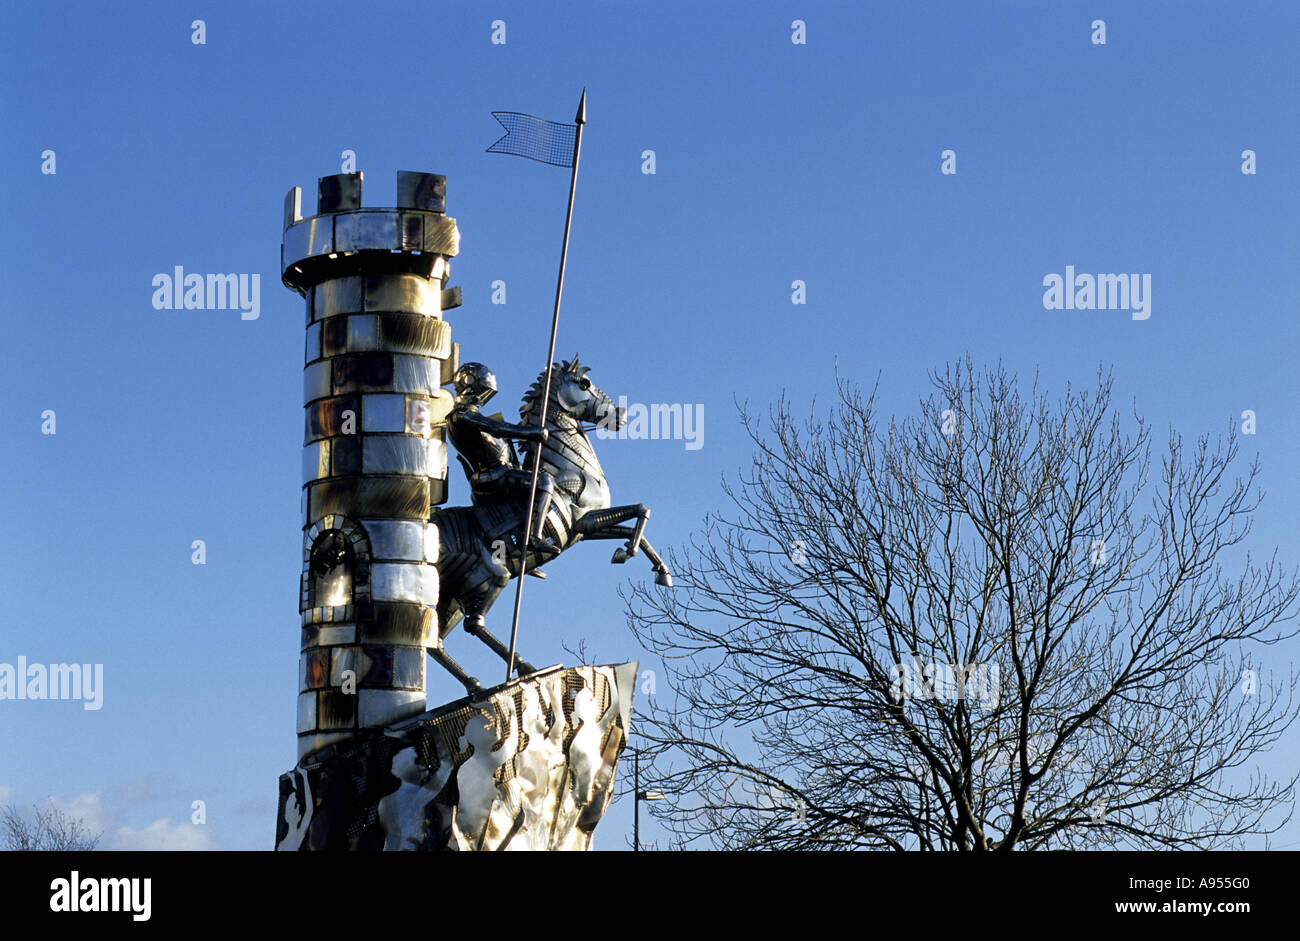 Le chevalier de la Vale sculpture par John McKenna, CASTLE VALE, Birmingham, West Midlands, England, UK Banque D'Images